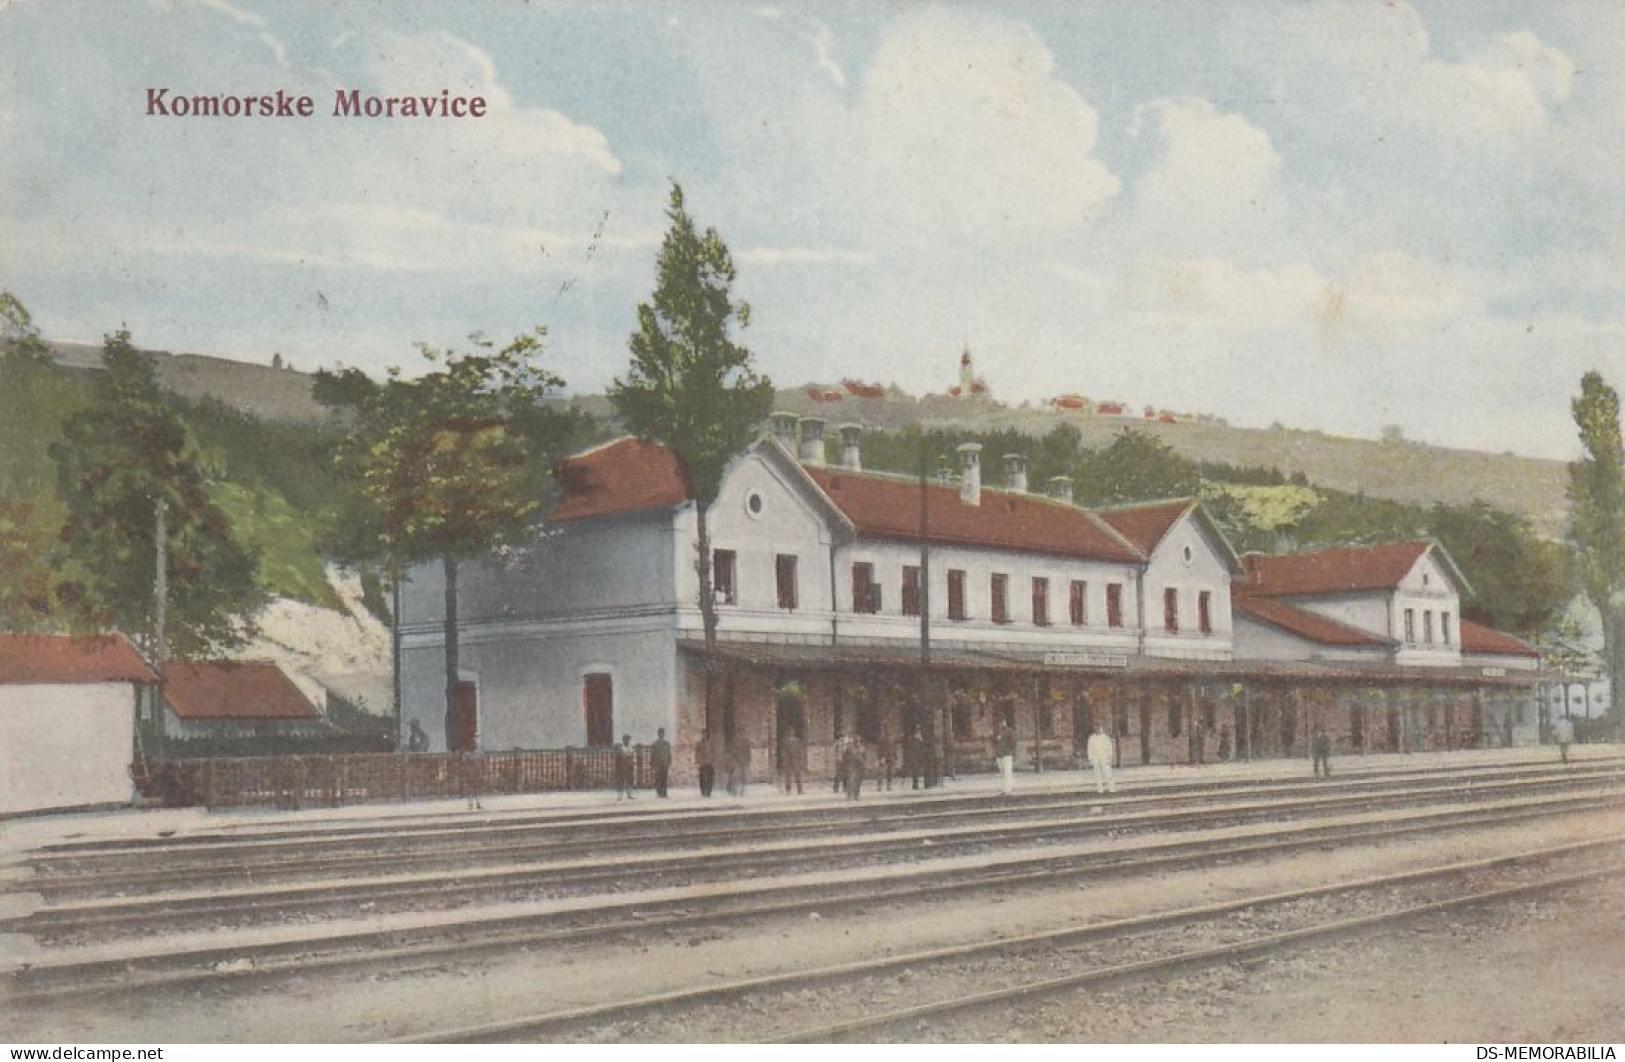 622_001 Komorske Moravice - Railway train station , Bahnhof 1914.jpg